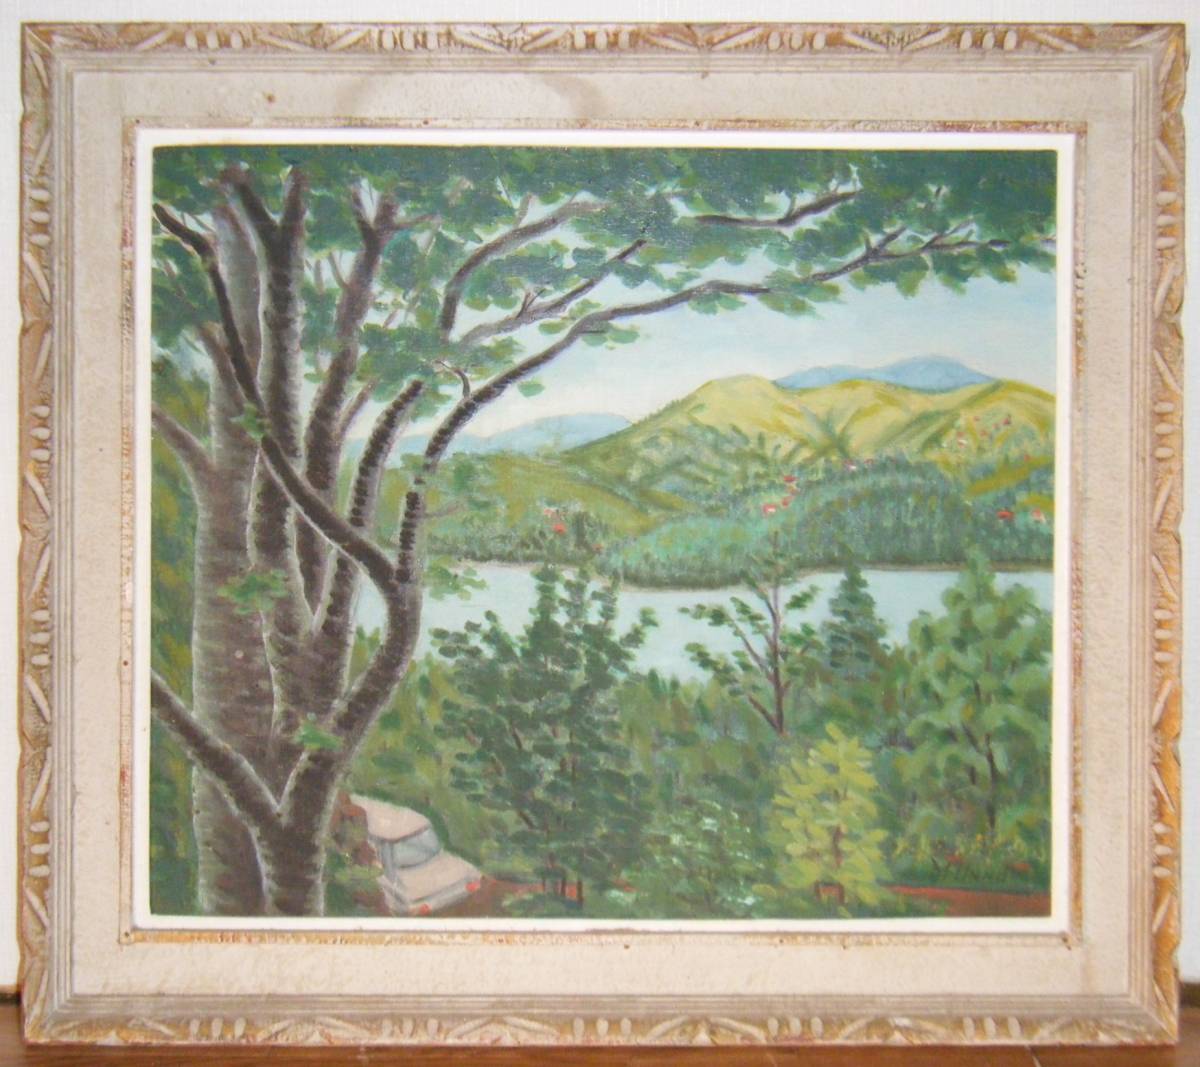 Painting M.UNNO Oil Painting No. 10 Lake Yamanaka Masterpiece P52, Painting, Oil painting, Nature, Landscape painting